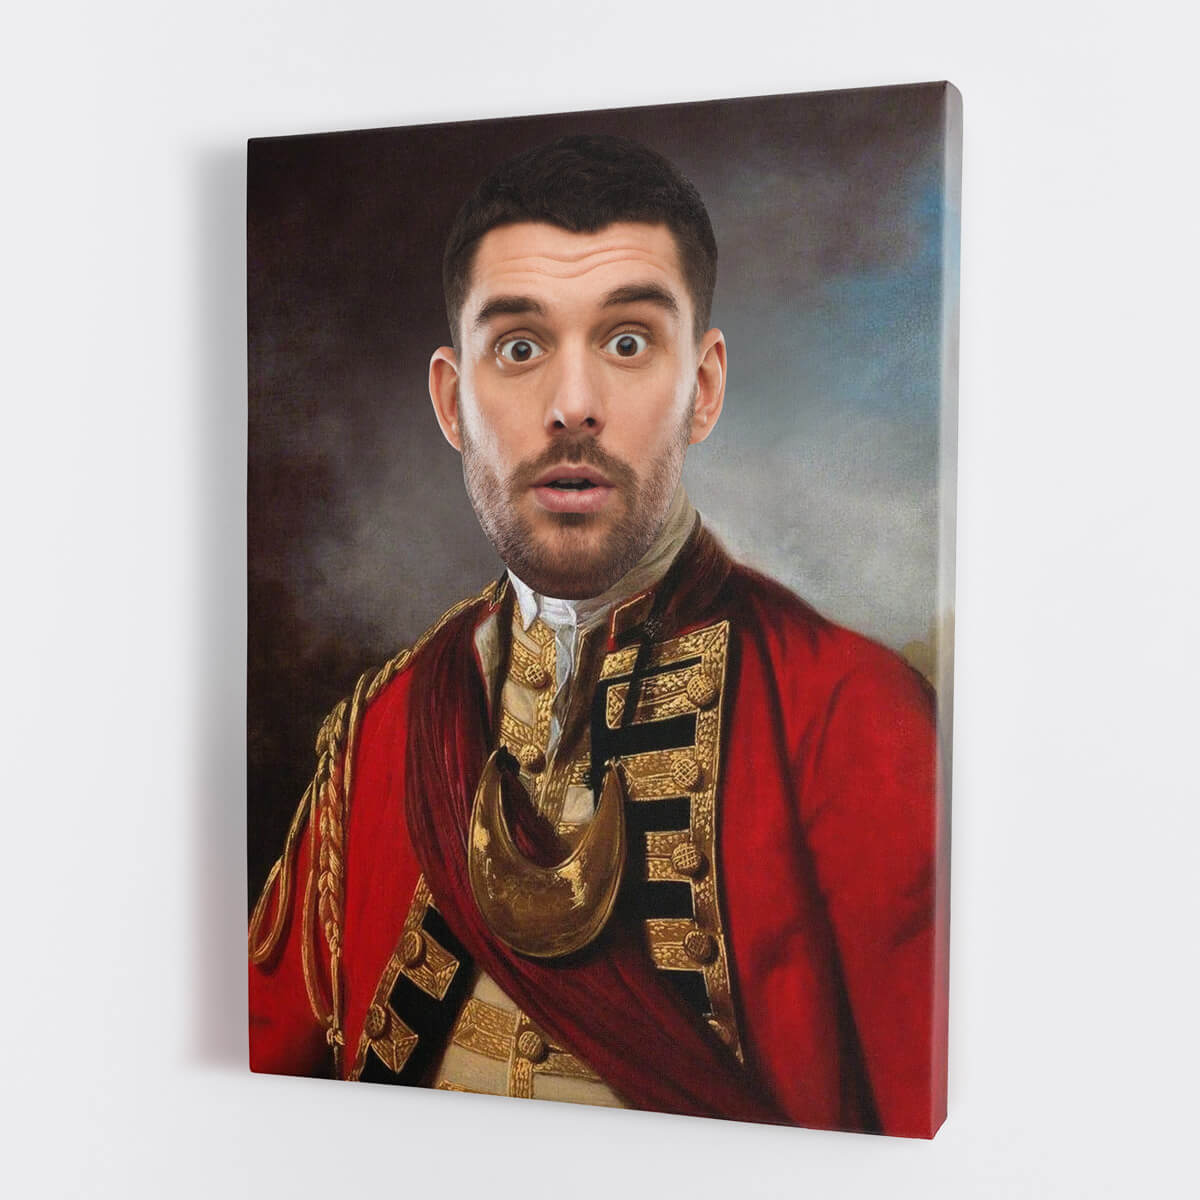 Regiment Royal Portrait